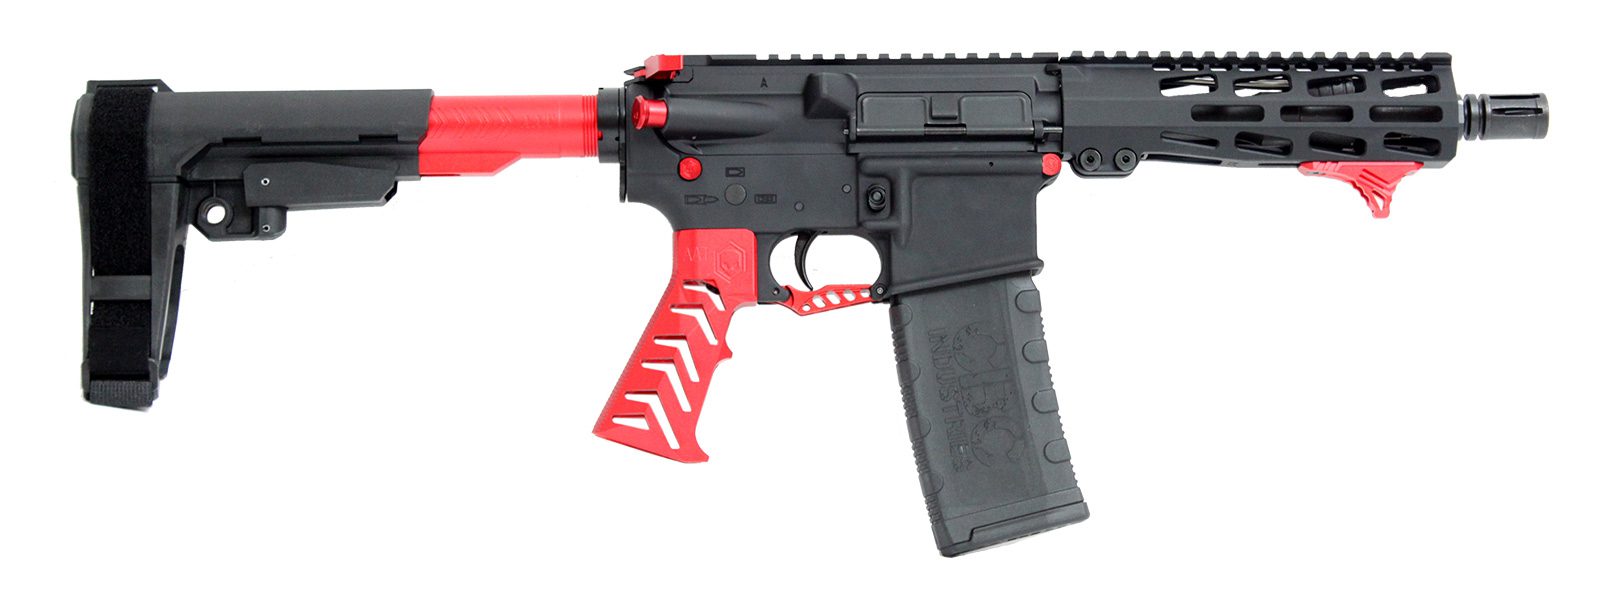 cbc-ps2-forged-aluminum-ar-pistol-alien-red-223-wylde-7-5″-barrel-m-lok-rail-sba3-brace